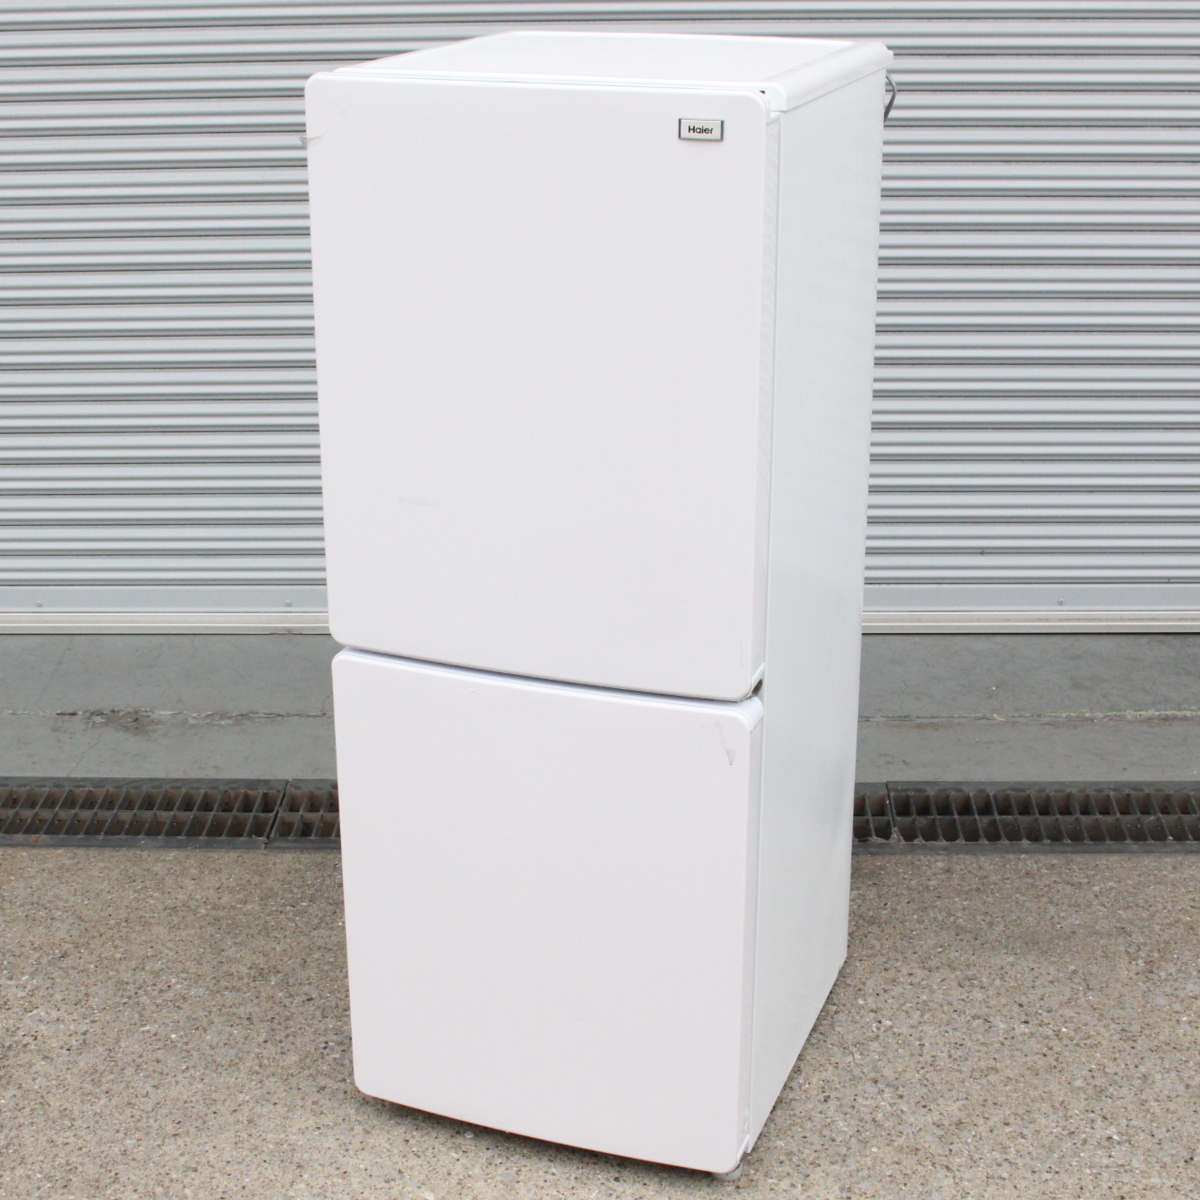 東京都中野区にて ハイアール ノンフロン冷凍冷蔵庫 JR-NF148B 2020年製 を出張買取させて頂きました。